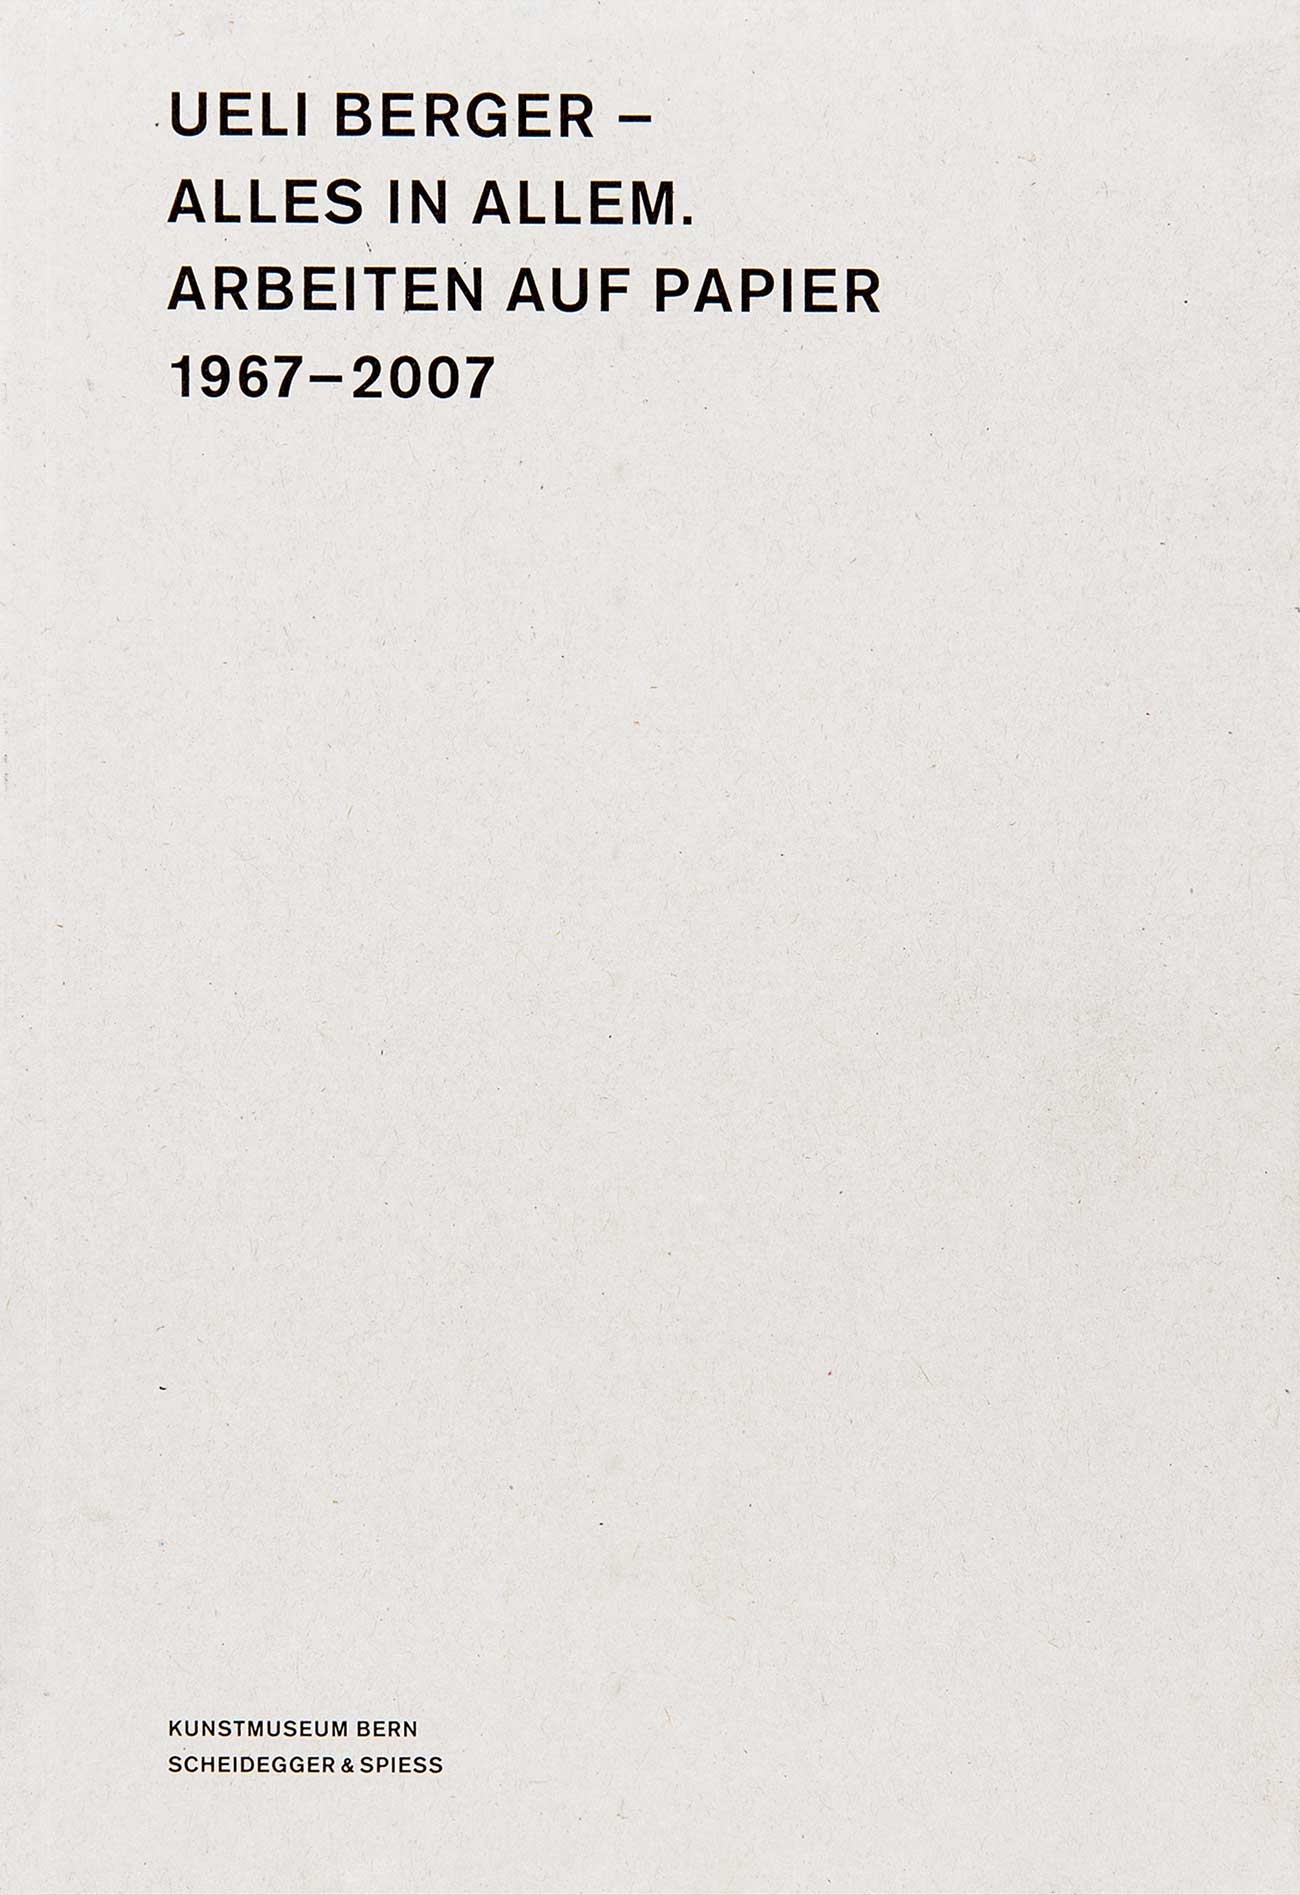 Ueli Berger – Alles in Allem. Arbeiten auf Papier, 1967–2007